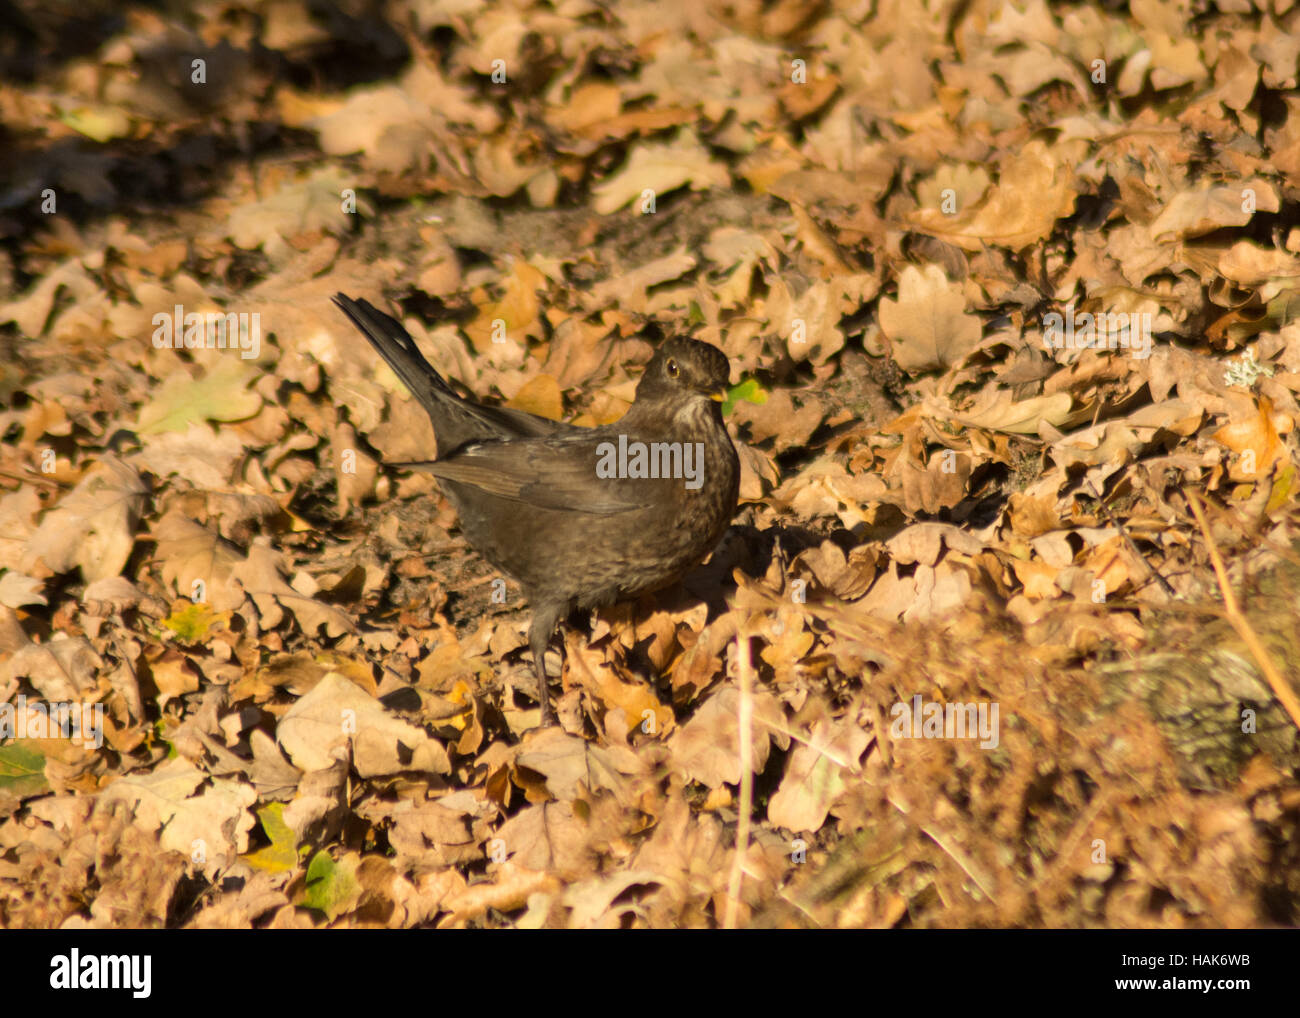 Blackbird femelle (Turdus merula) se nourrissant sur le sol dans les bois parmi les feuilles mortes Banque D'Images